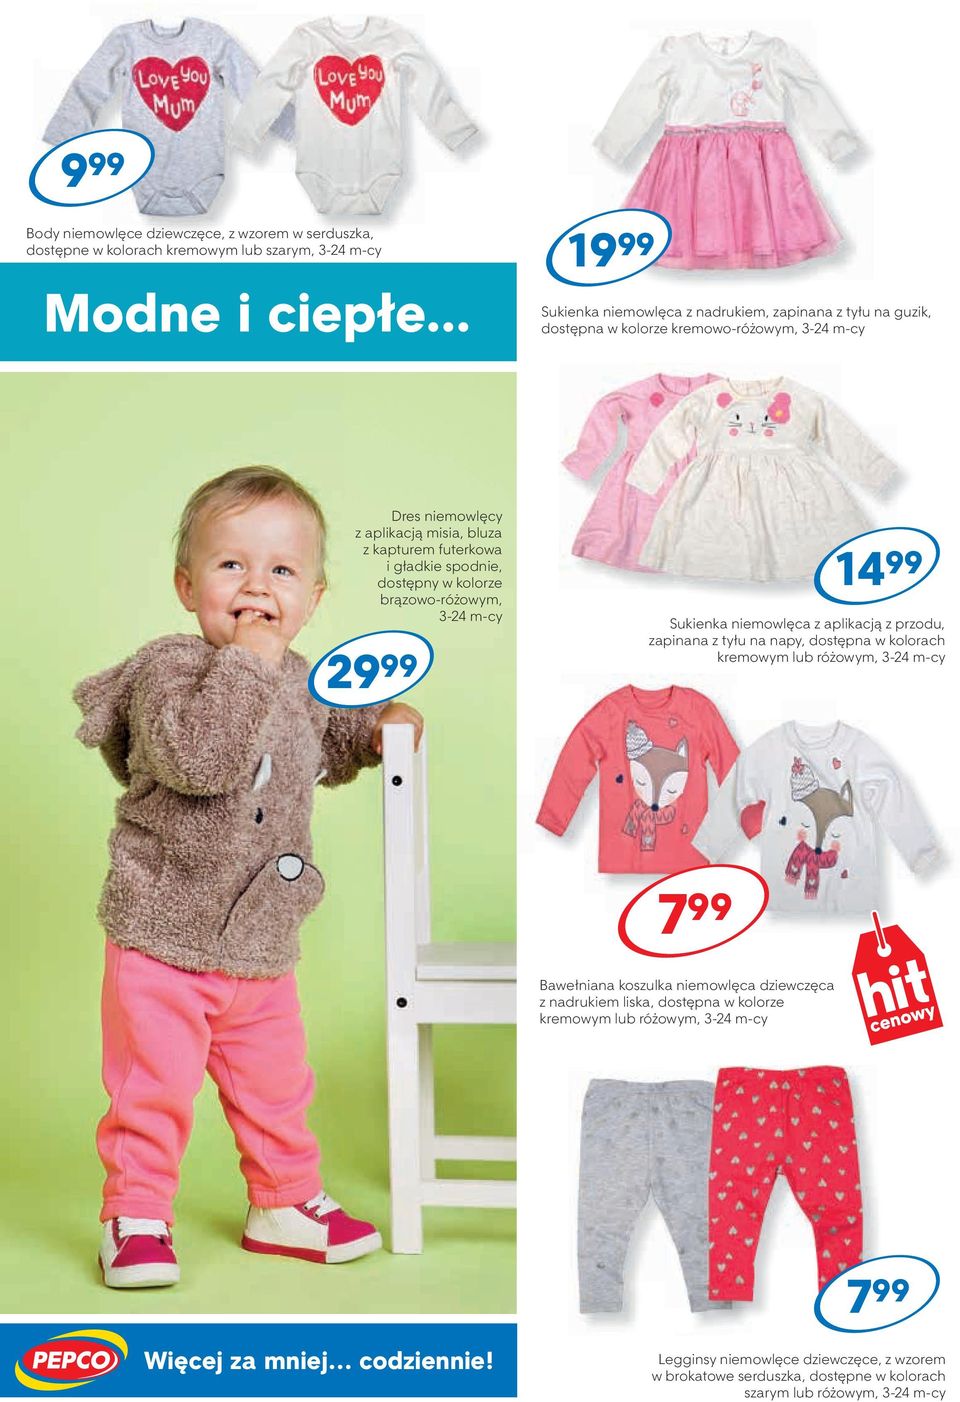 spodnie, dostępny w kolorze brązowo-różowym, 3-24 m-cy 2 14 99 Sukienka niemowlęca z aplikacją z przodu, zapinana z tyłu na napy, dostępna w kolorach kremowym lub różowym, 3-24 m-cy